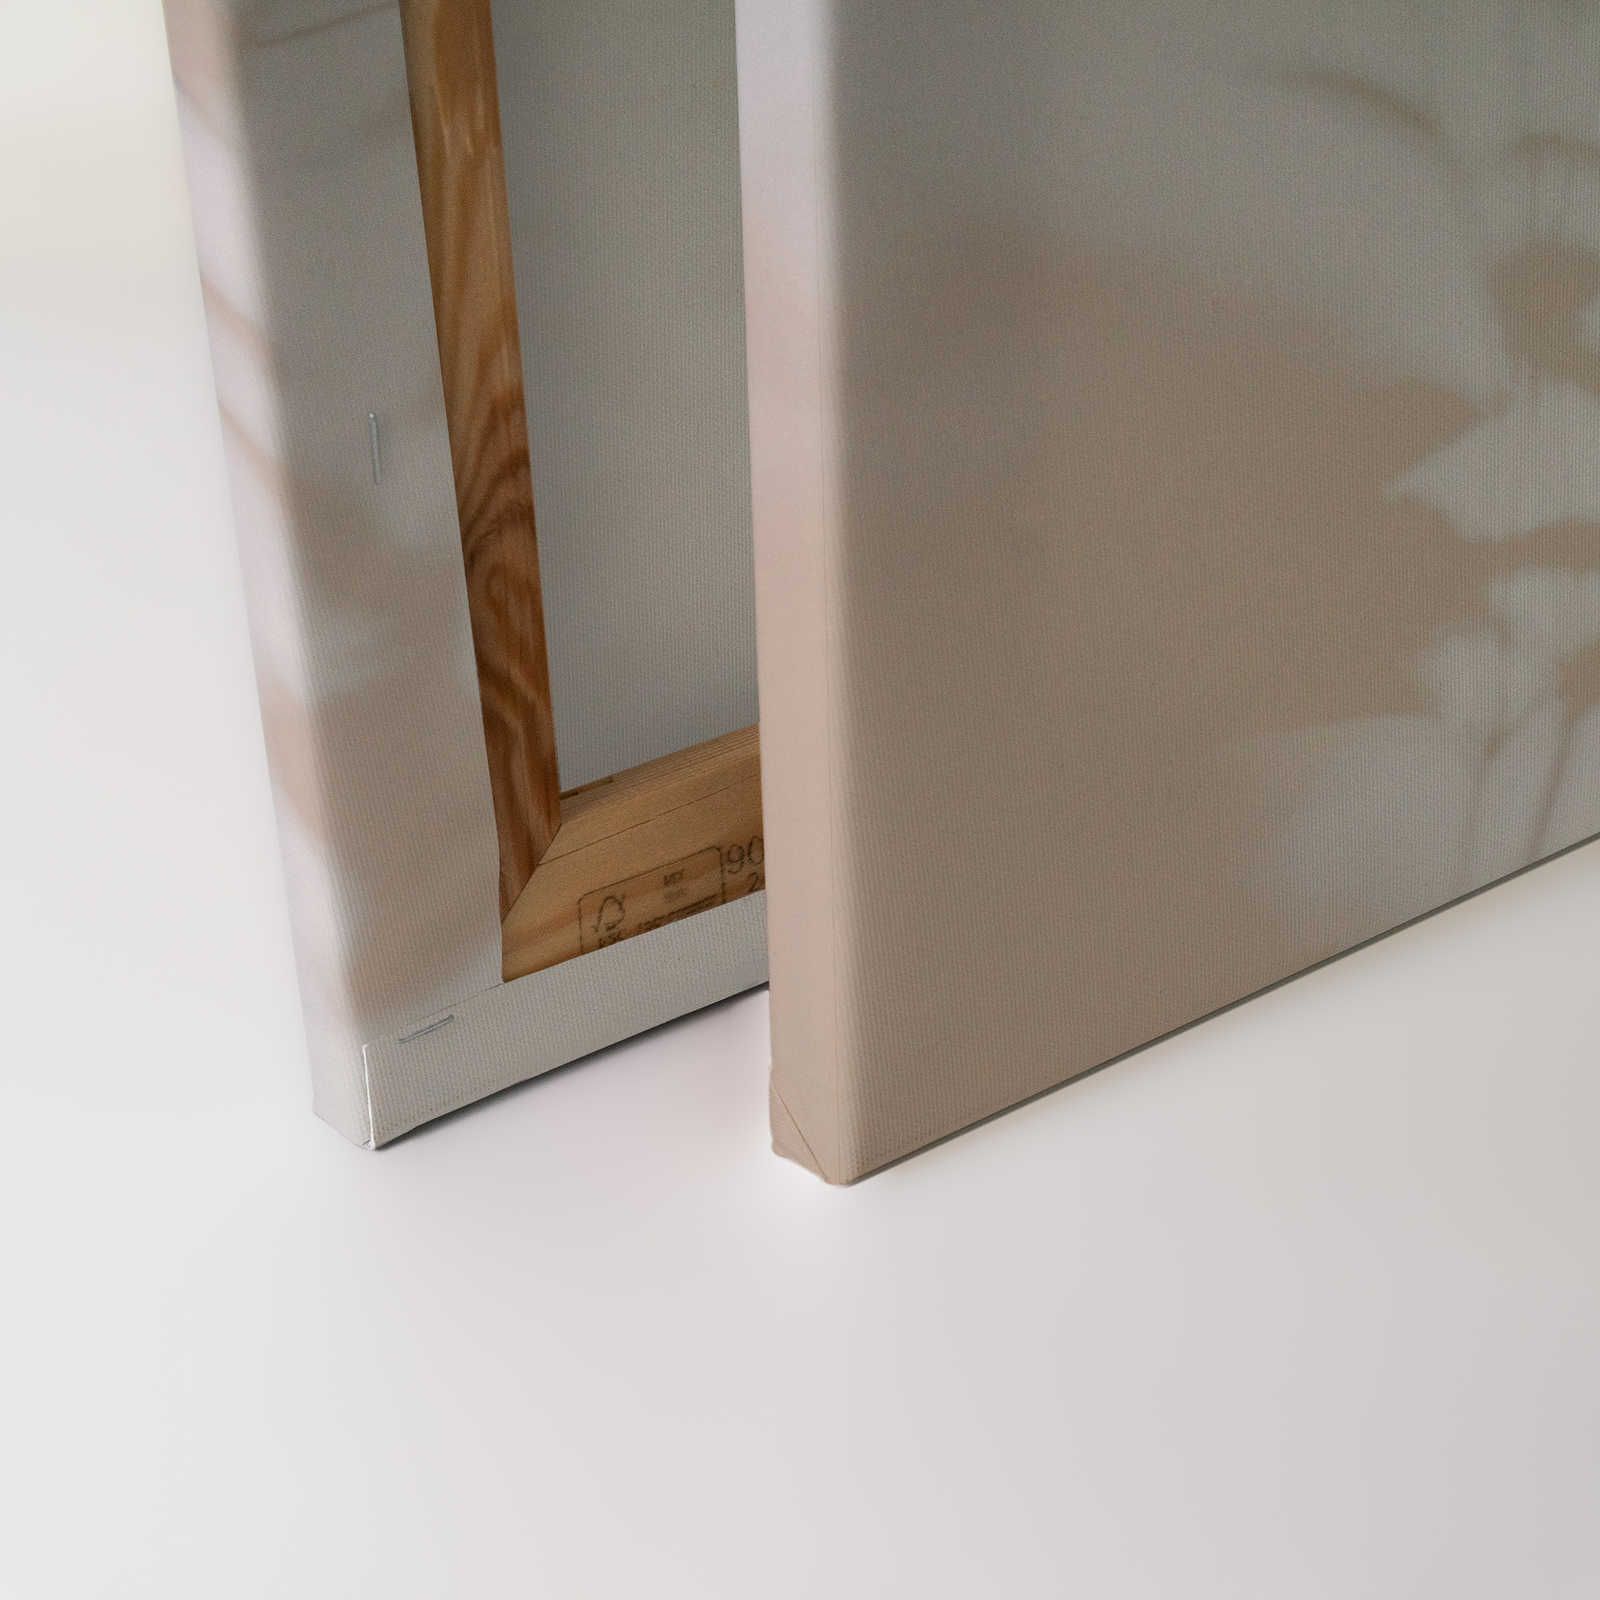             Shadow Room 1 - Naturaleza Cuadro en lienzo Beige y Blanco, diseño difuminado - 0,90 m x 0,60 m
        